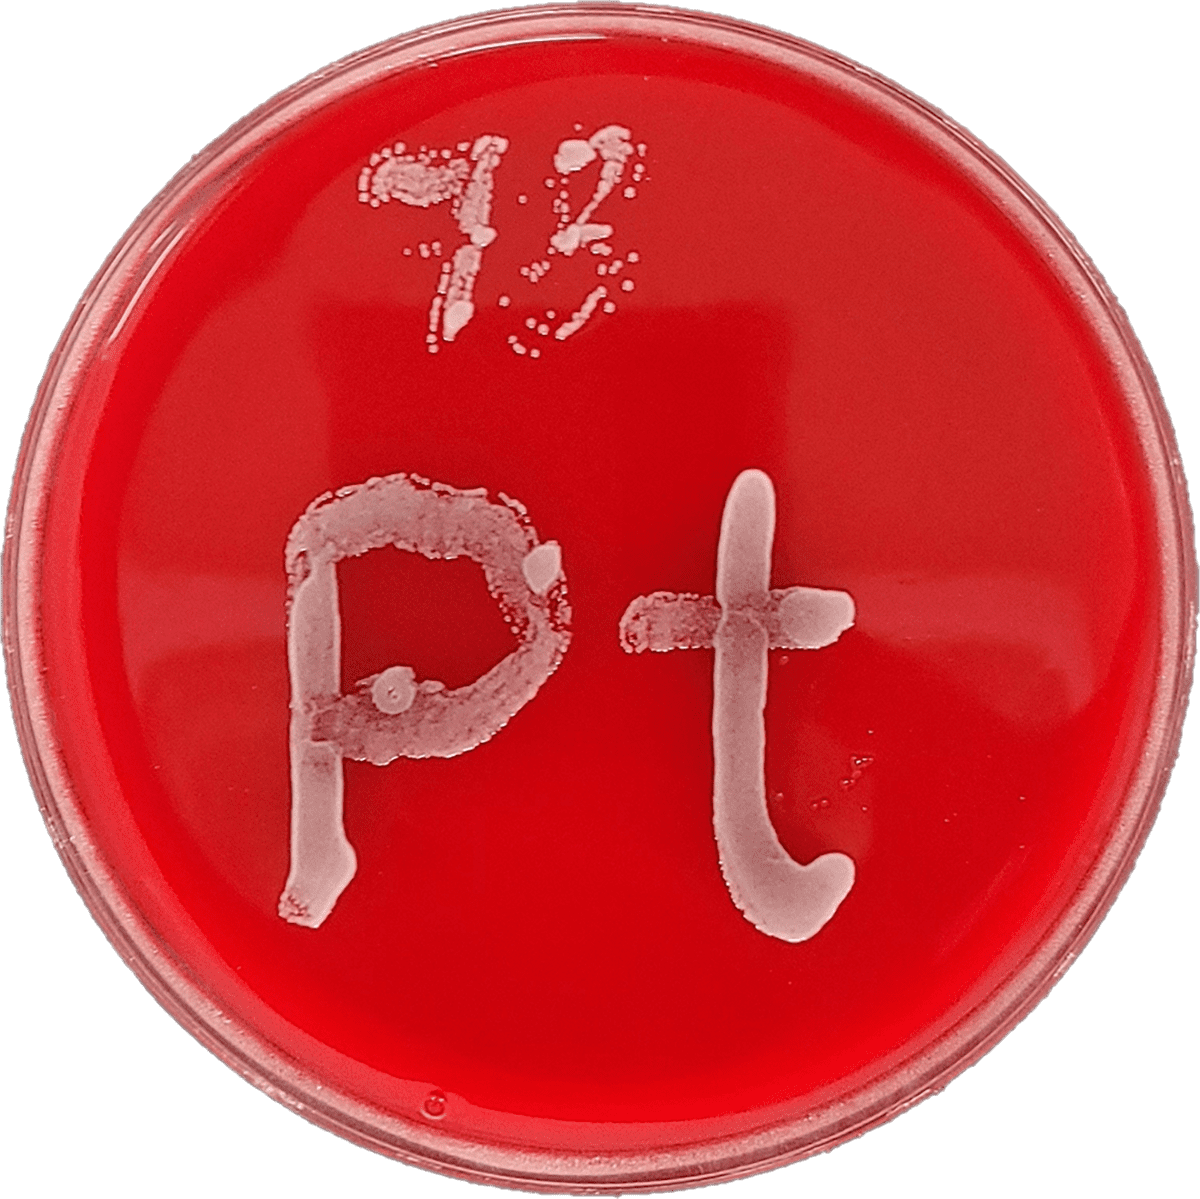 Boîte de Pétri contenant de la gélose rouge sur laquelle pousse un cordon de champignons ayant la forme du symbole de l'élément platine (Pt).